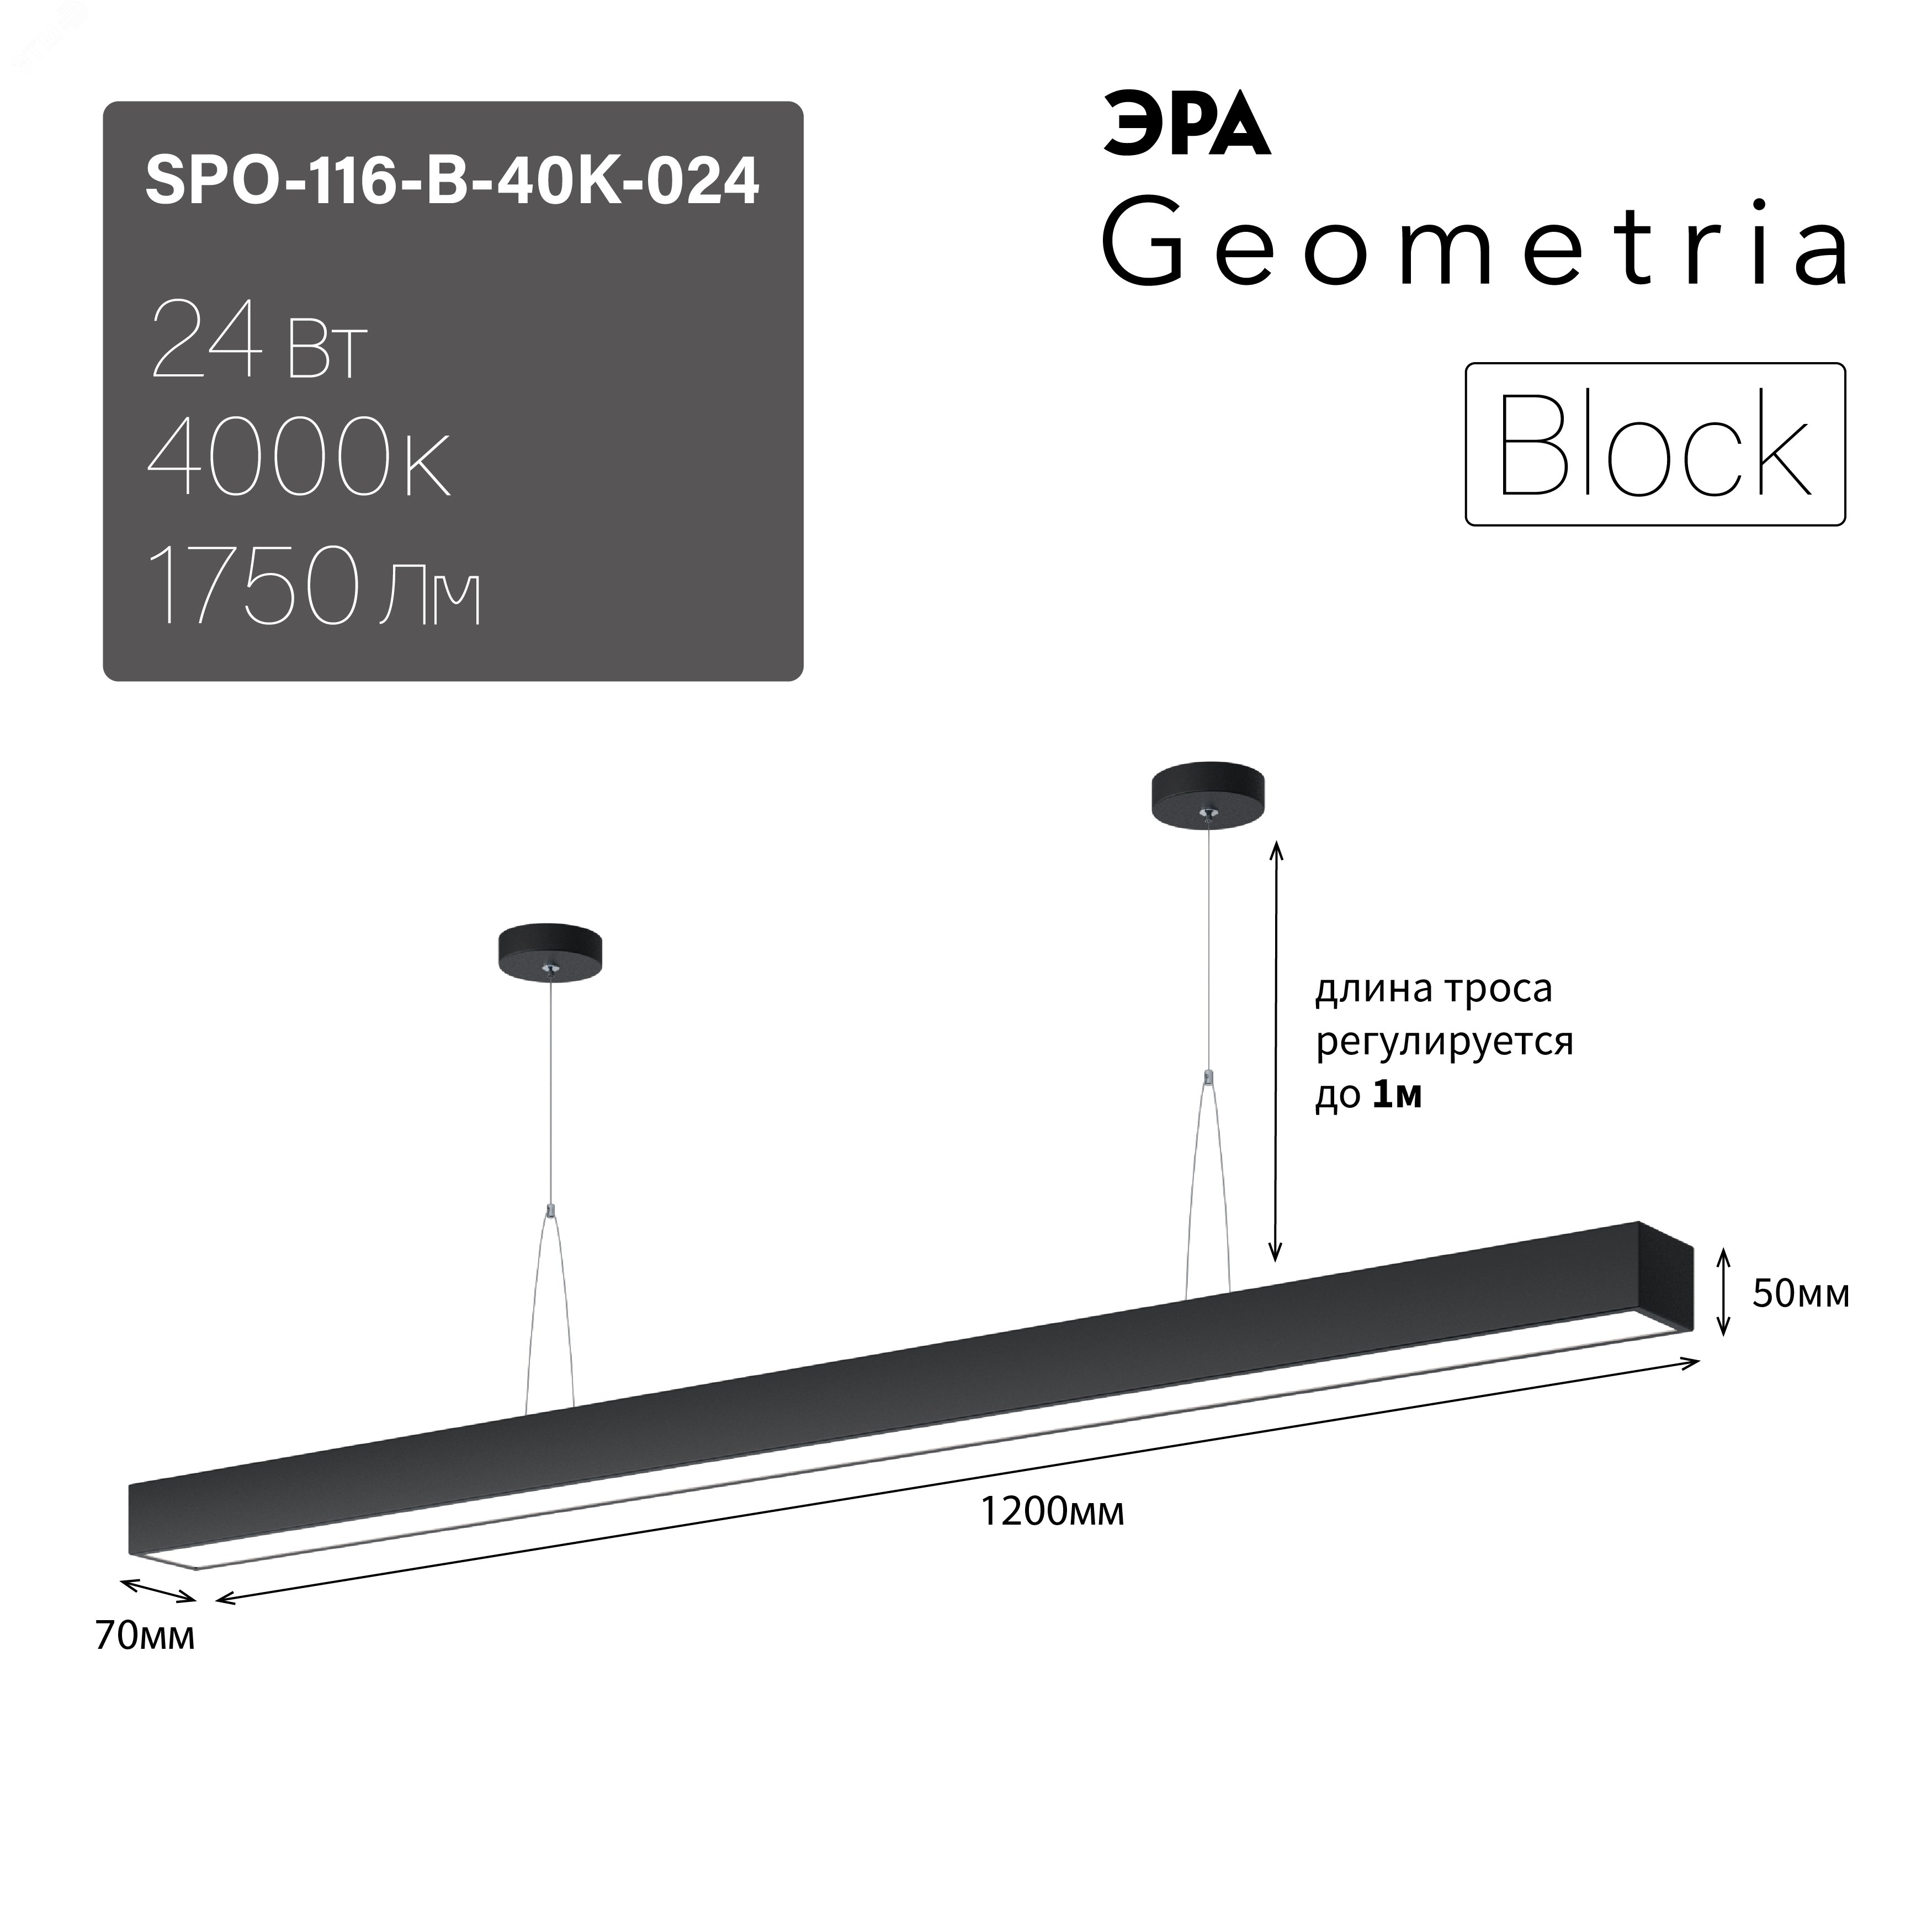 Светильник светодиодный Geometria Block SPO-116-B-40K-024 24Вт 4000К 1750Лм IP40 1200*70*50 черный подвесной Б0050549 ЭРА - превью 9